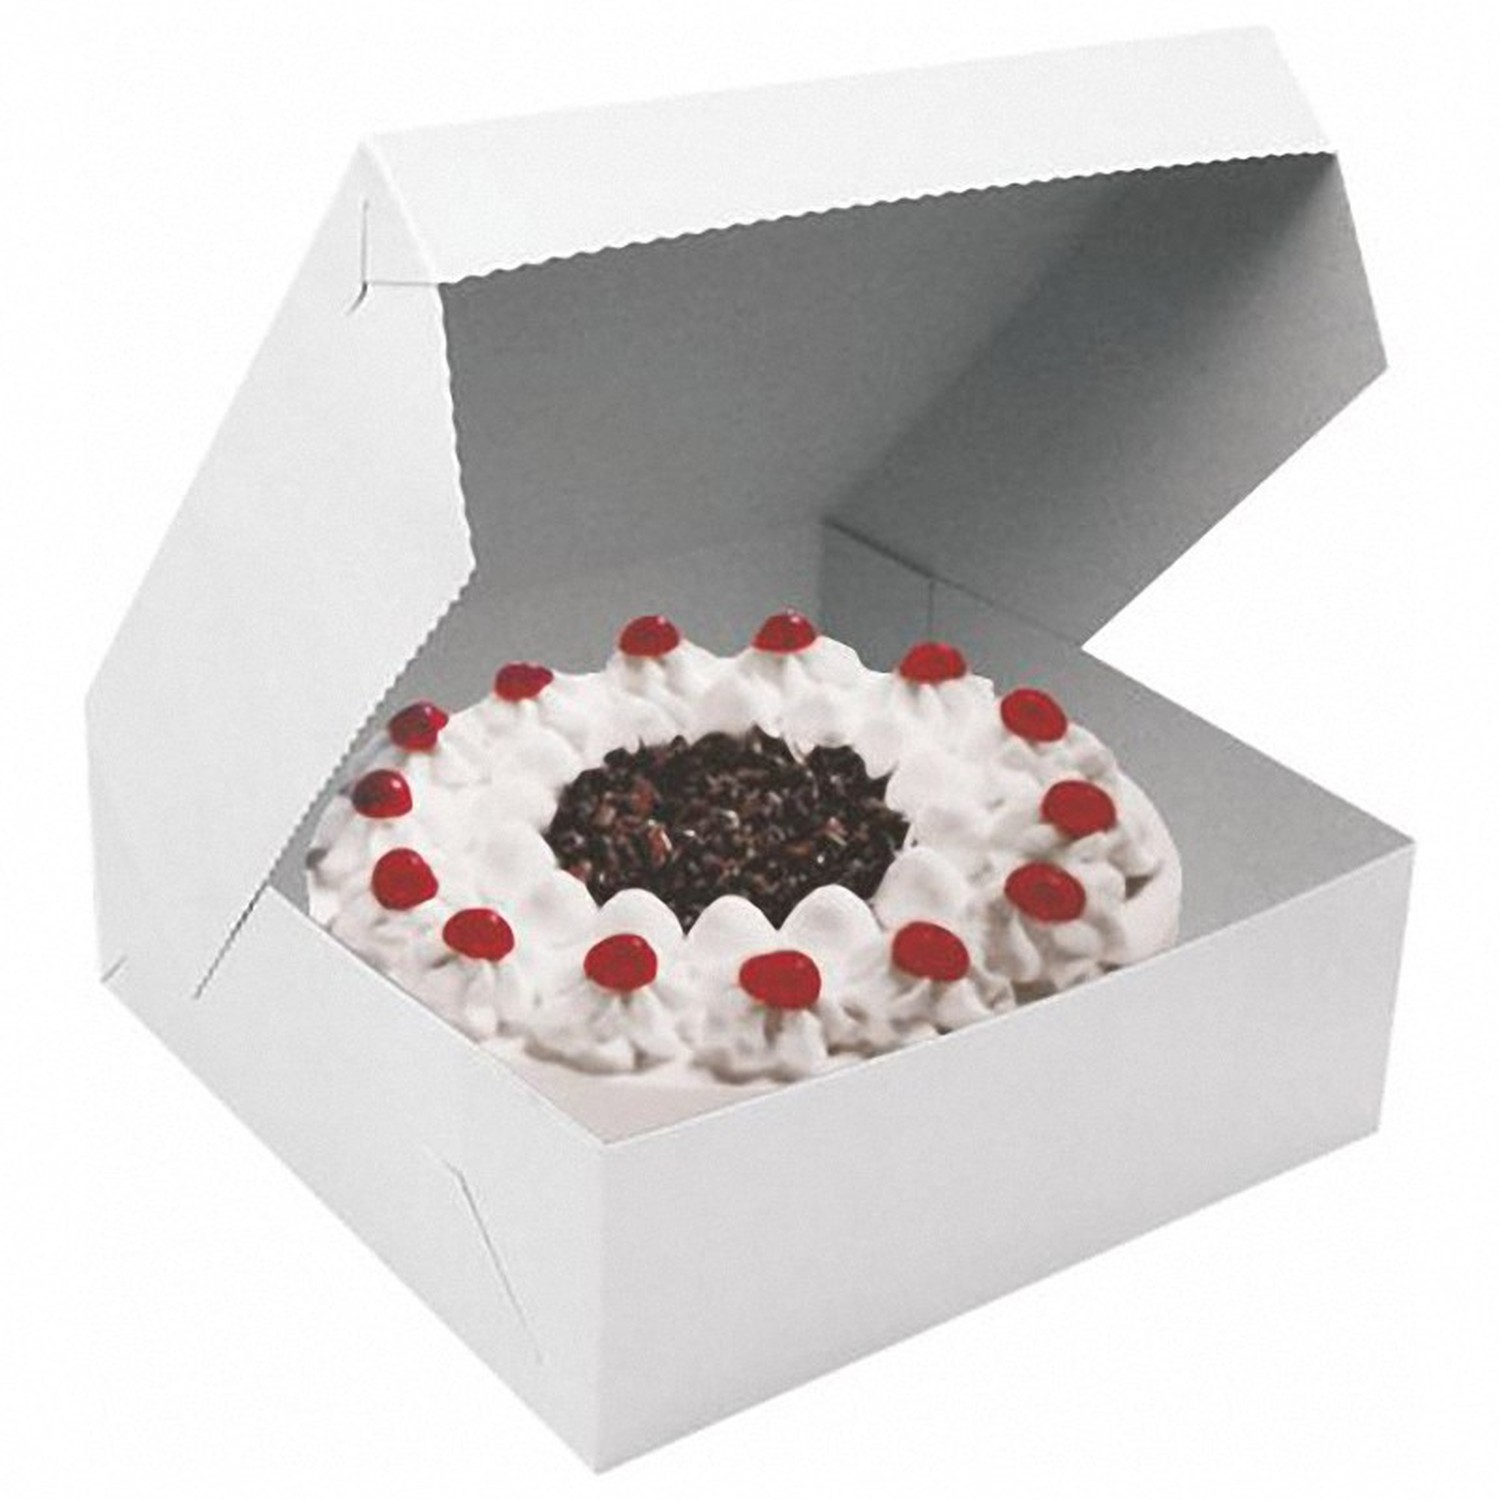 Kuchenkarton Tortenkarton farbig bunt Cupcakes Kekse Plätzchen 28x28x10cm weiß 